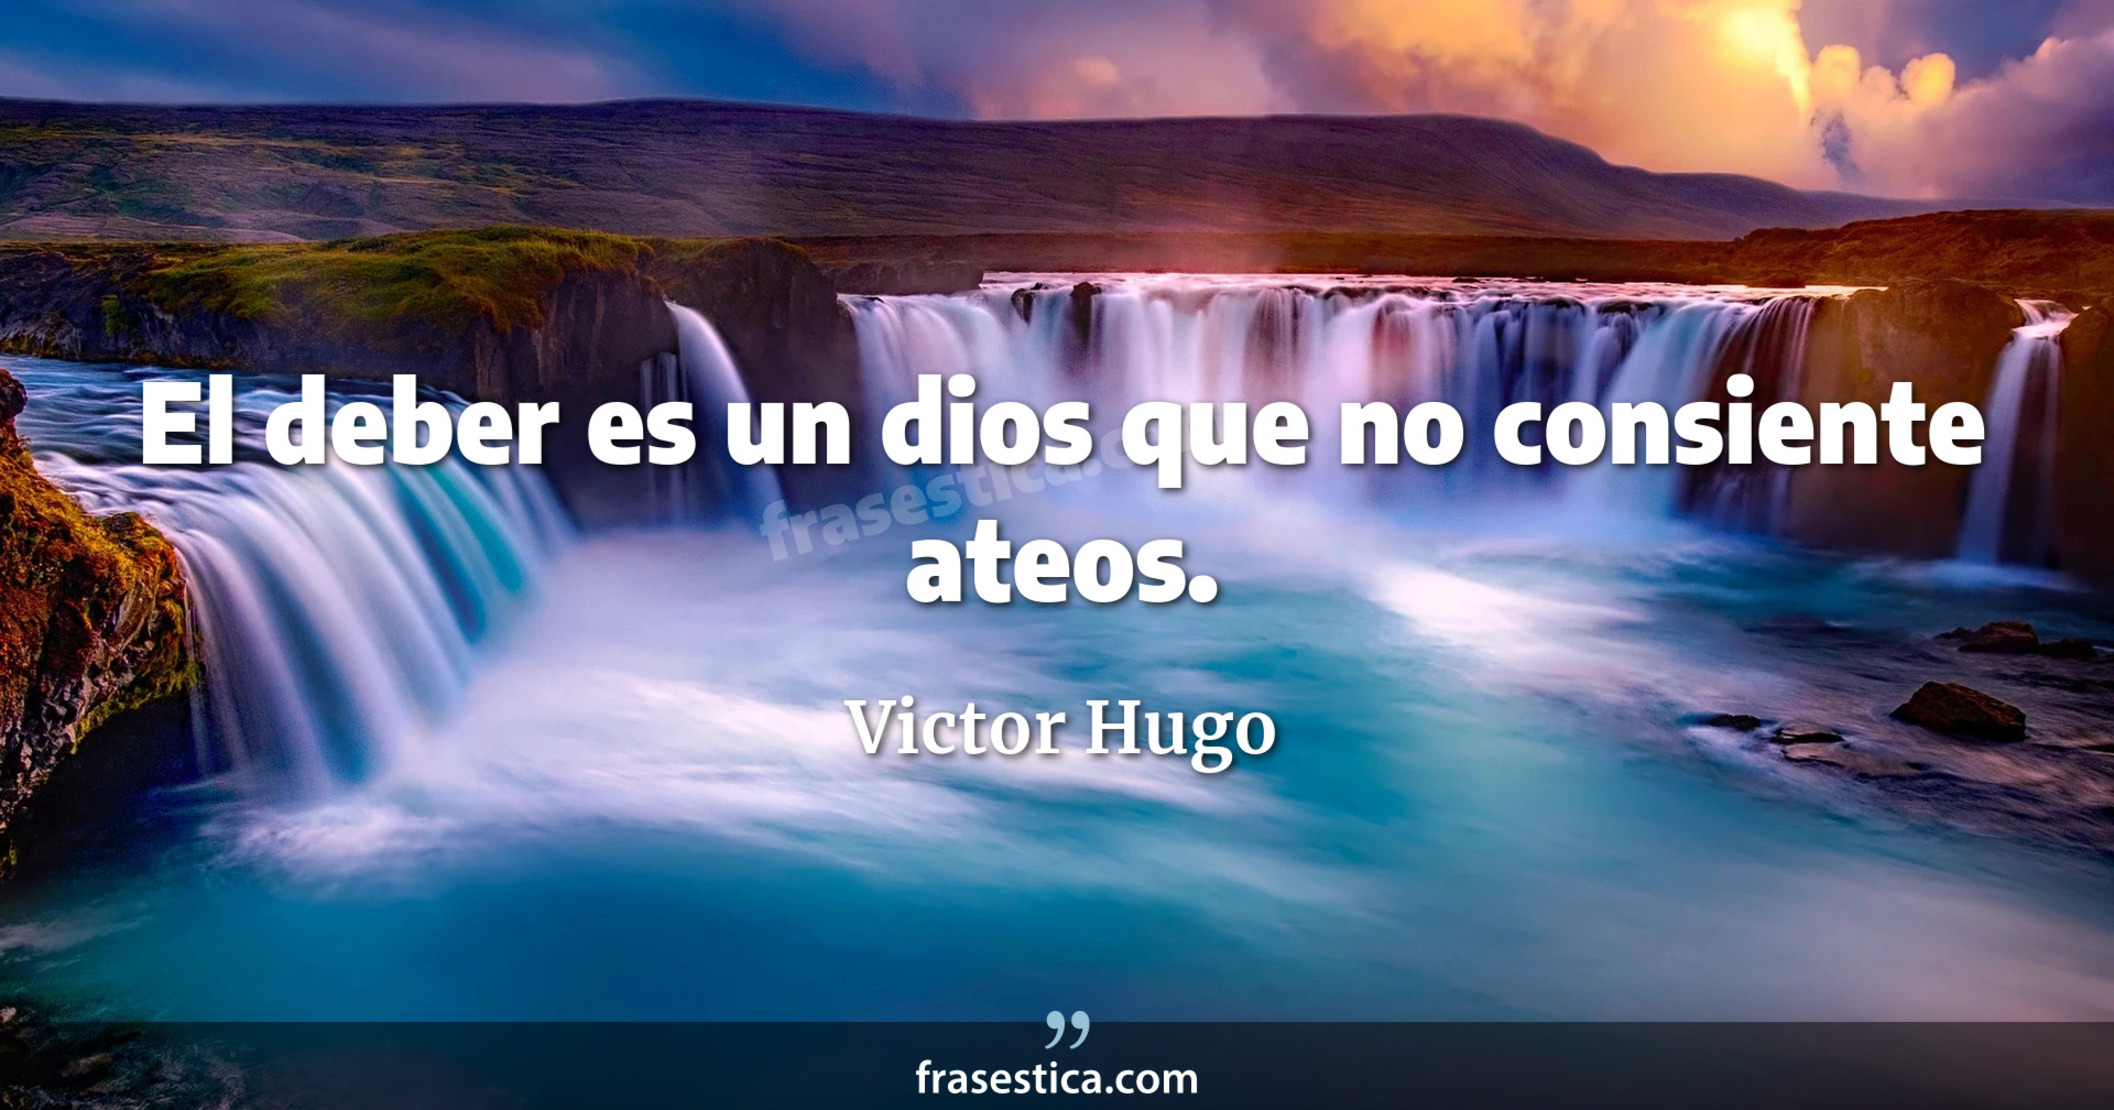 El deber es un dios que no consiente ateos. - Victor Hugo